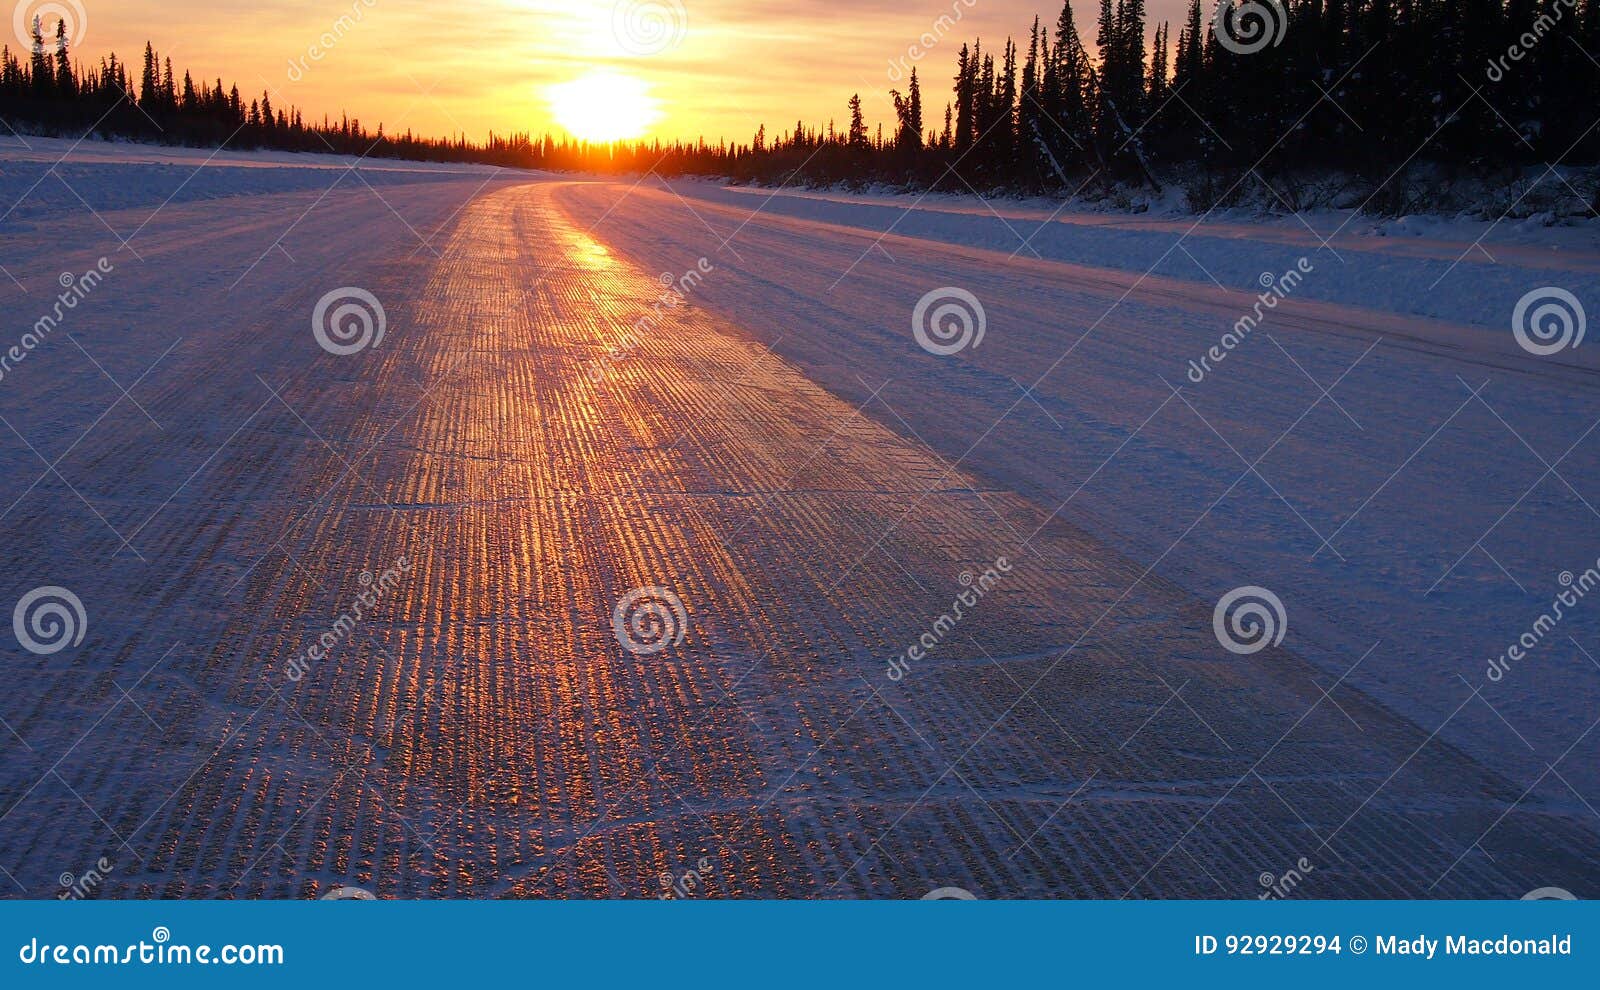 aklavik ice road